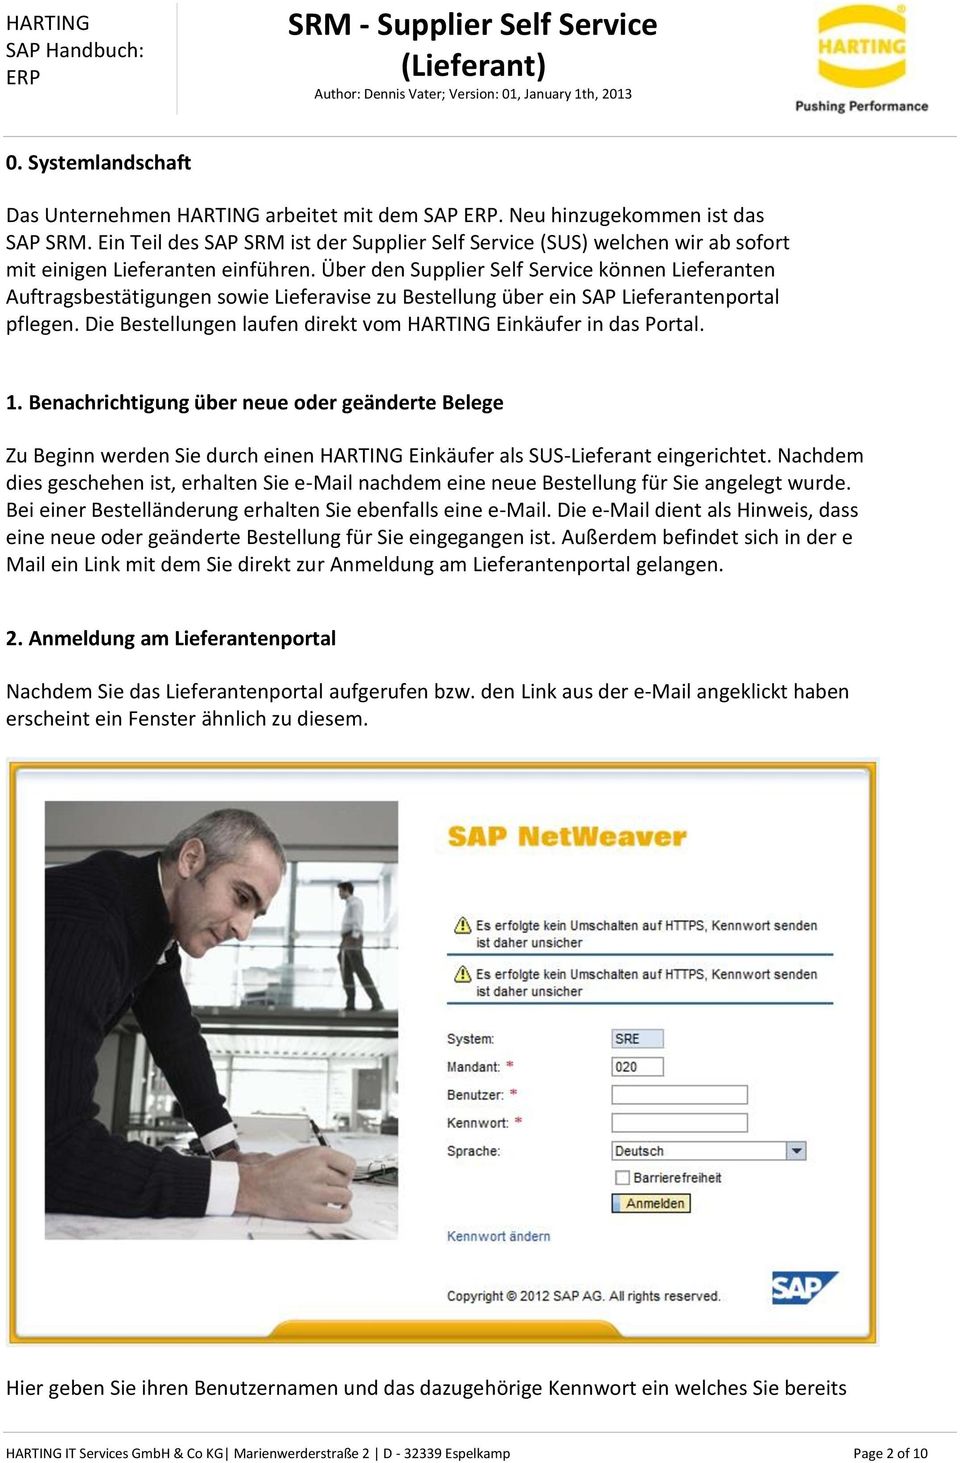 Über den Supplier Self Service können Lieferanten Auftragsbestätigungen sowie Lieferavise zu Bestellung über ein SAP Lieferantenportal pflegen.